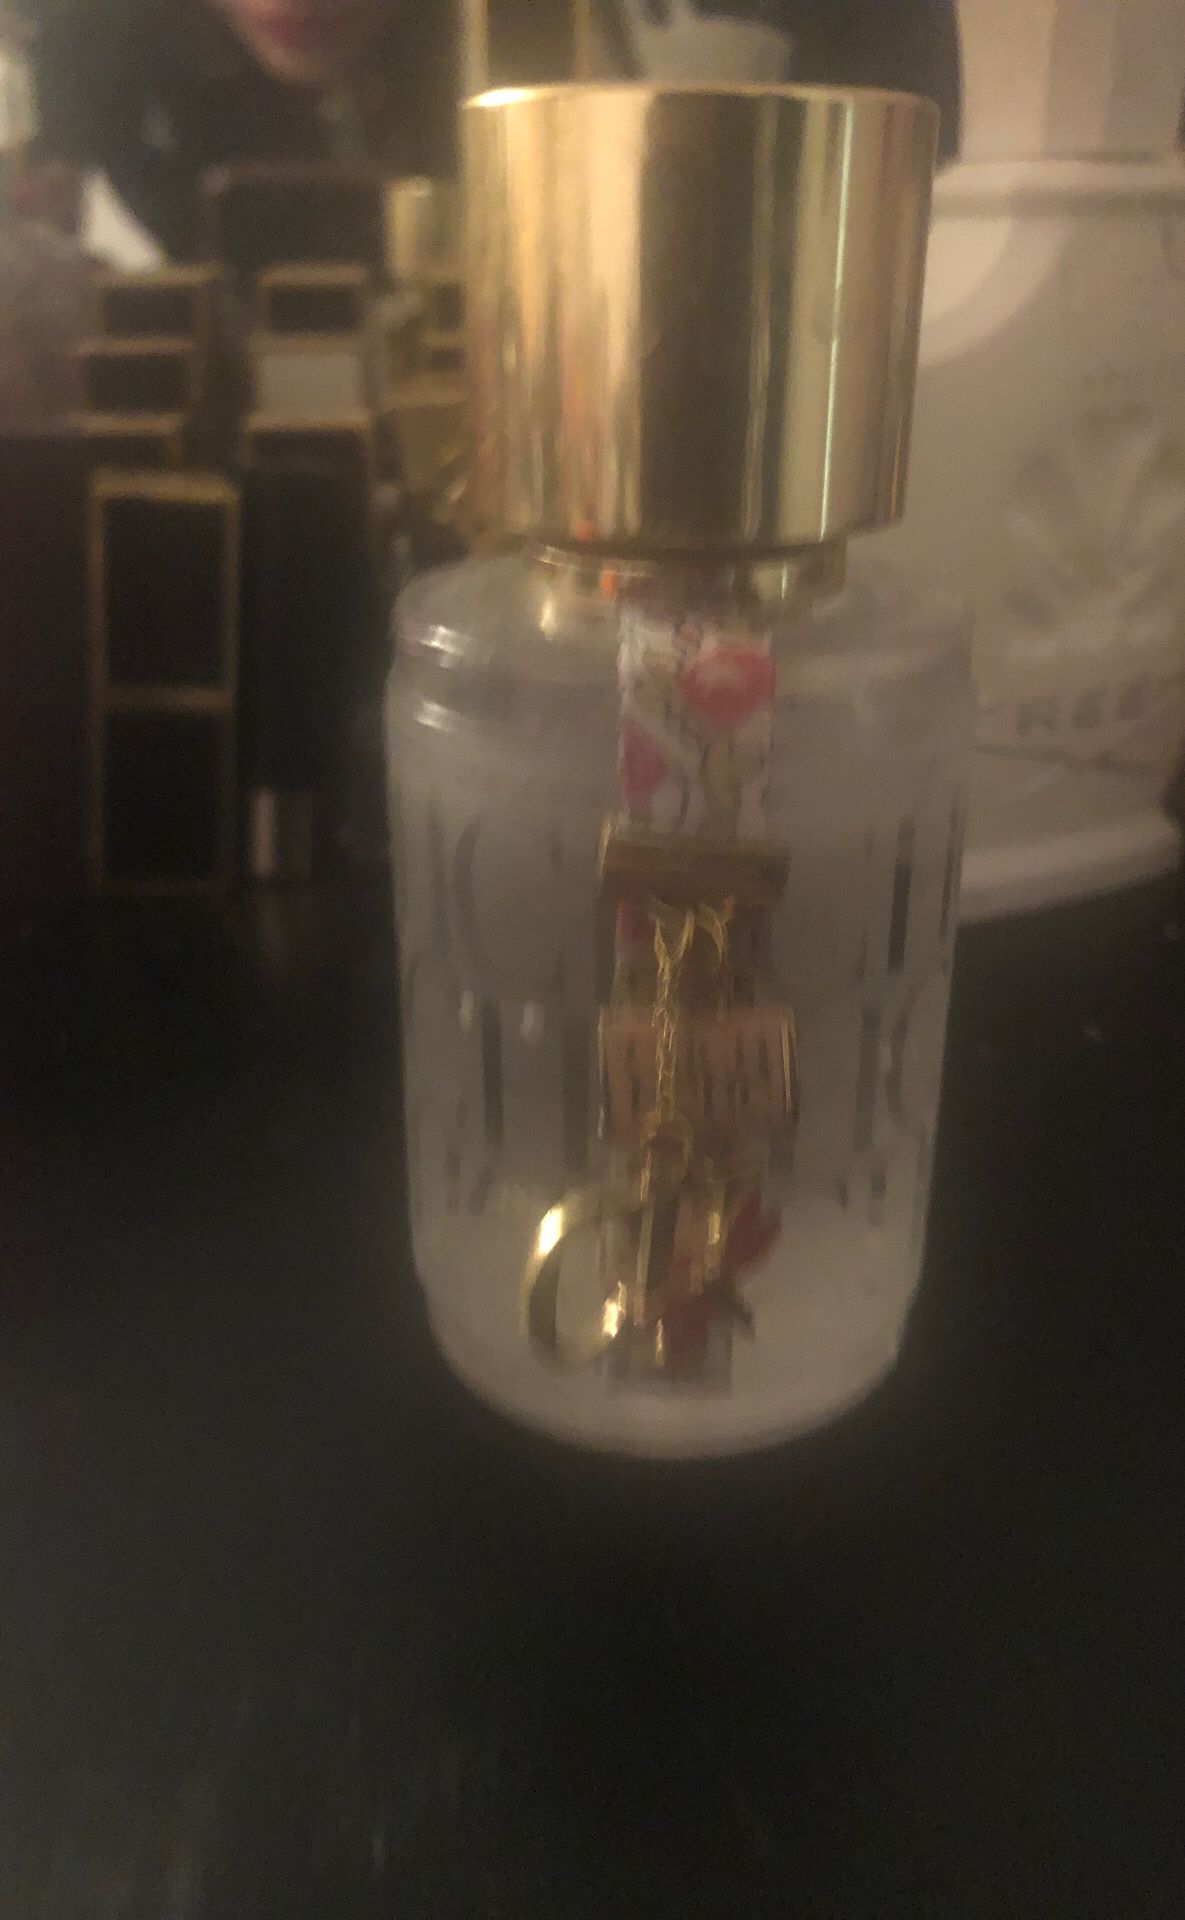 Carolina Herrera perfume